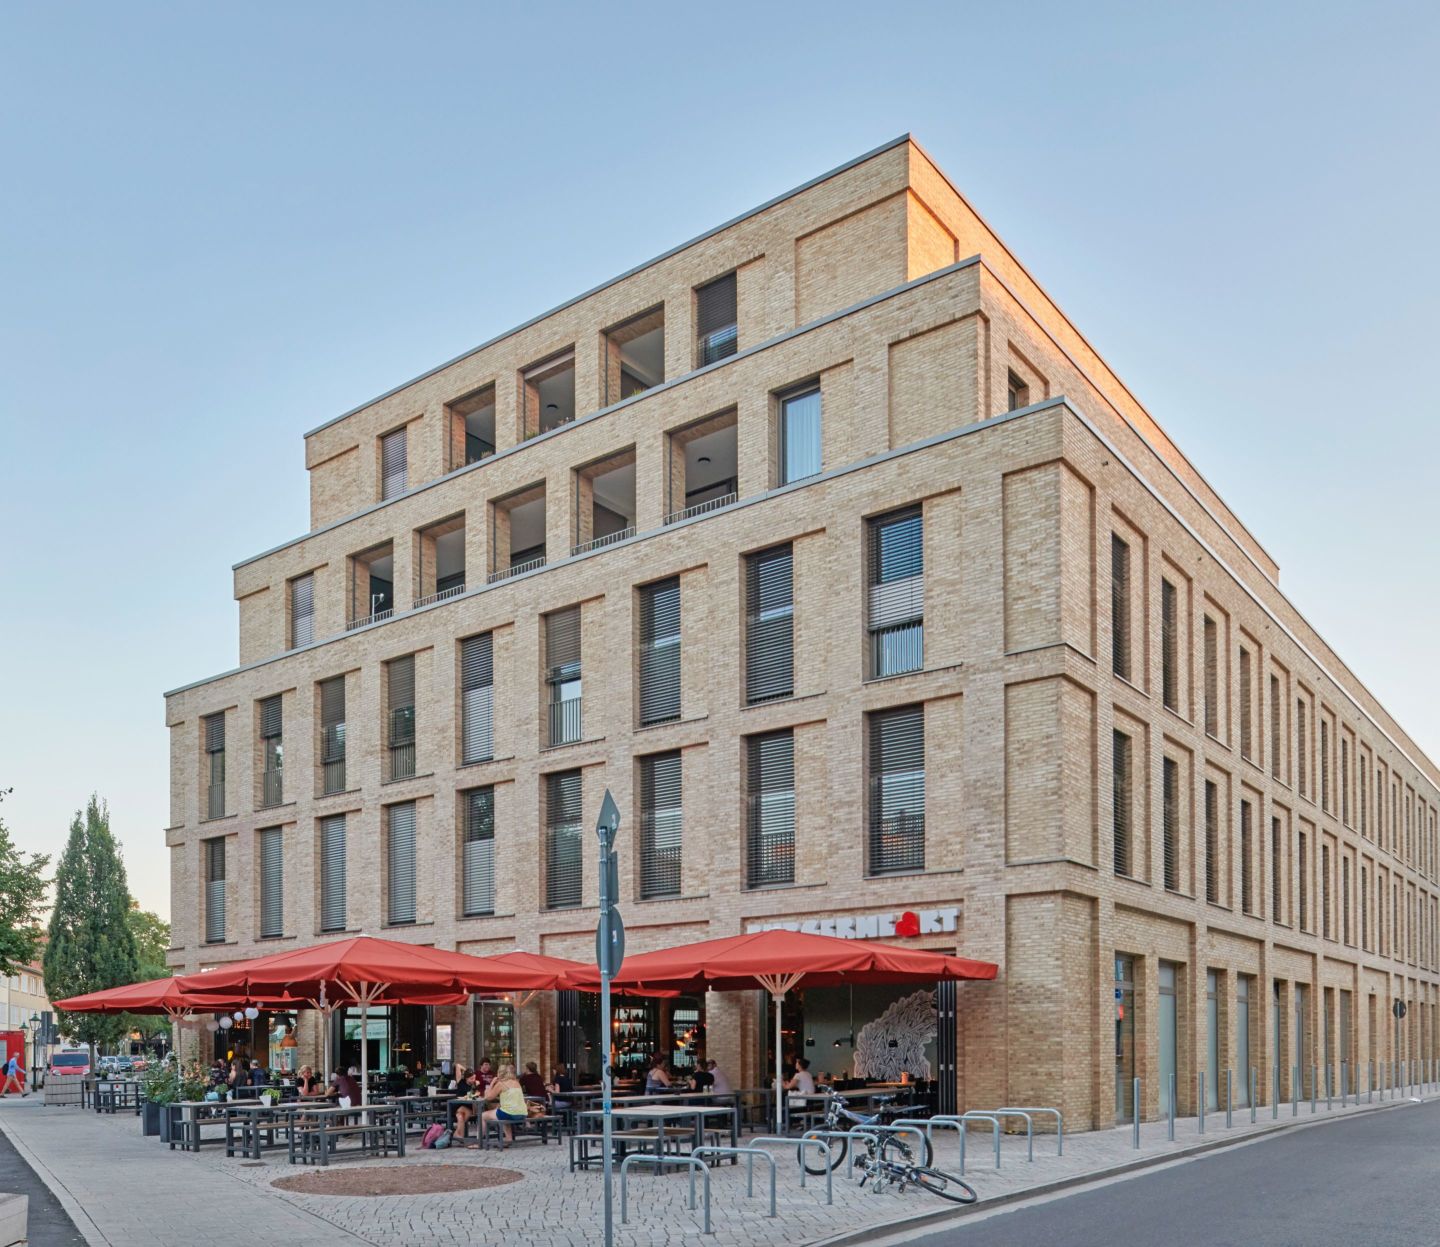 Obrázok: Budova MARQ na námestí Marstallplatz v Hannoveri s vonkajšími reštauráciami.